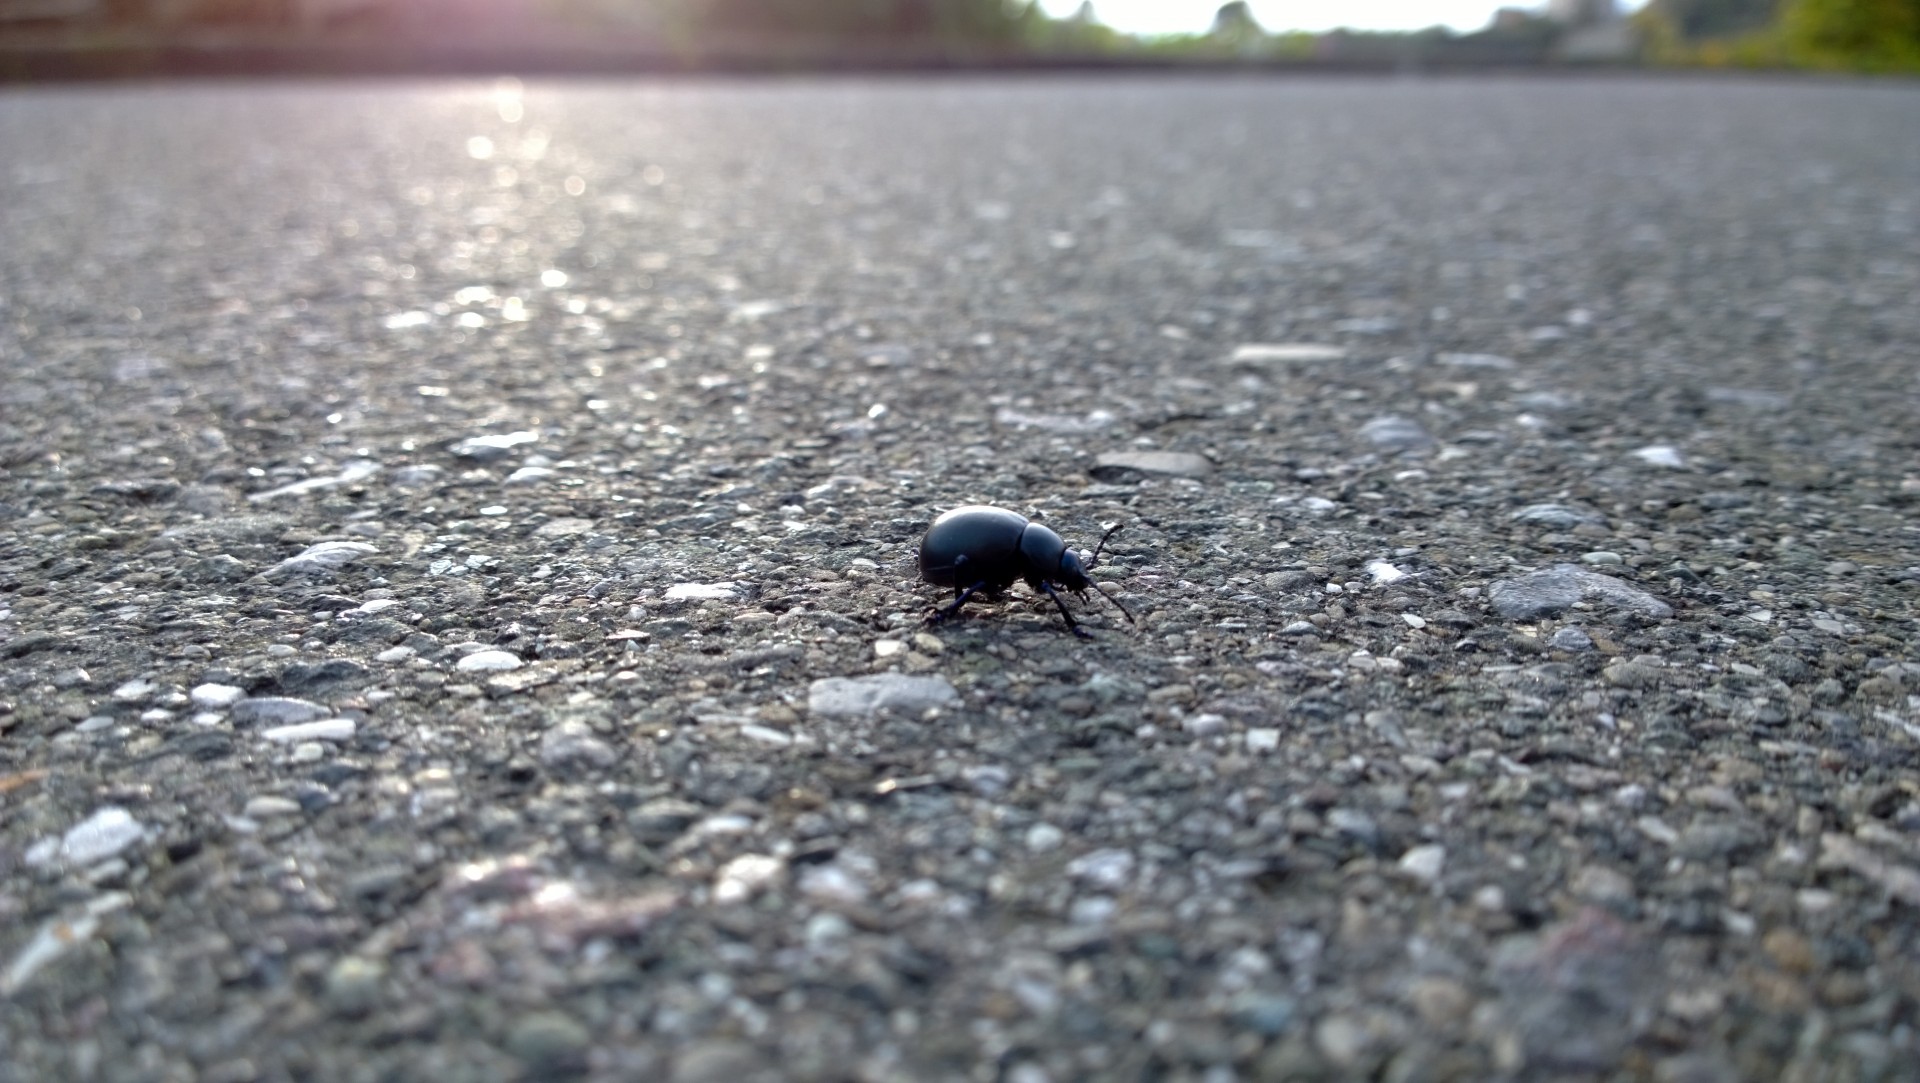 Beetle de trecere a drumului